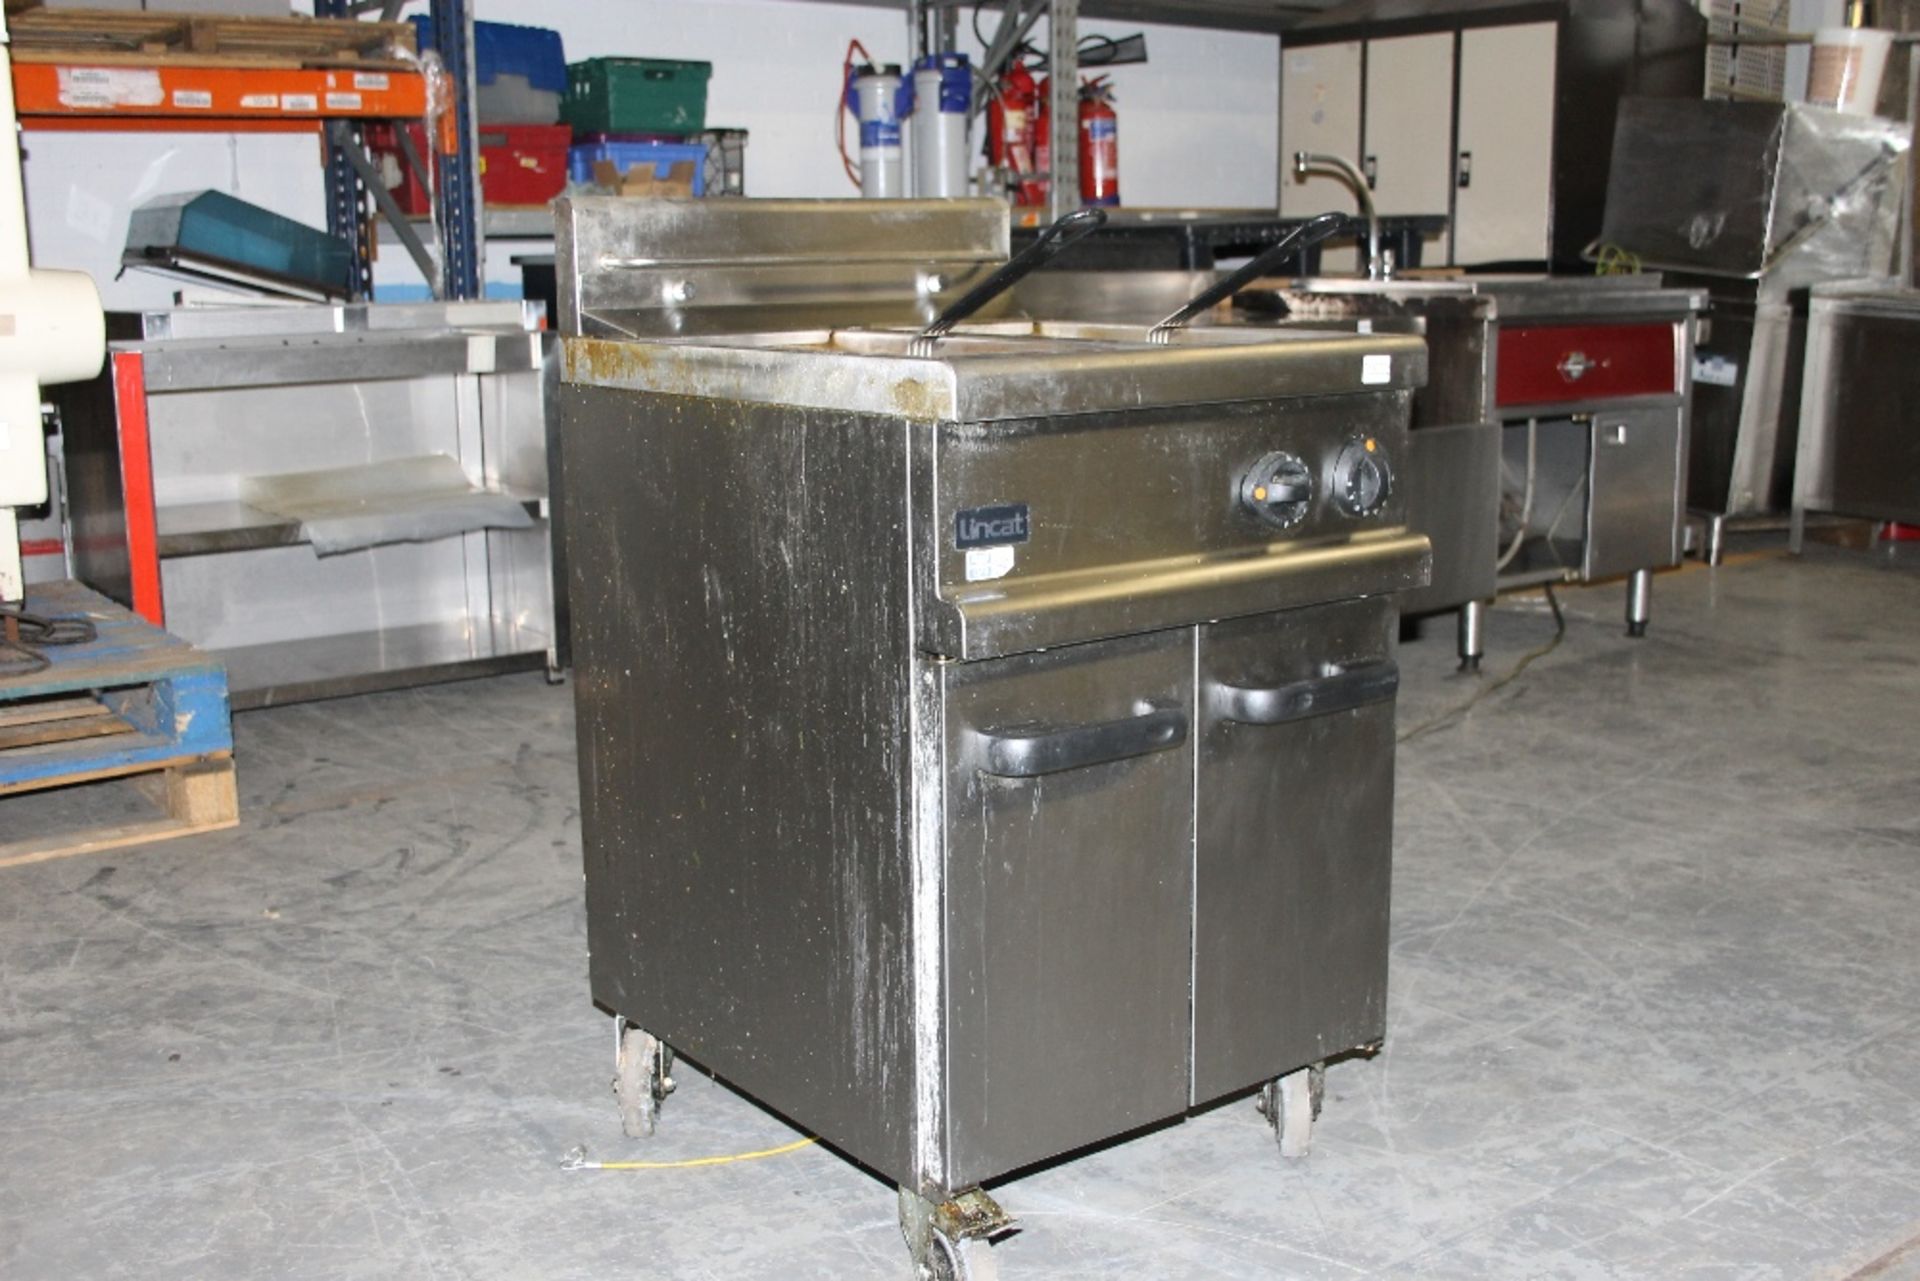 Lincat Twin Tank Double Basket Gas Fryer – Model A003 - Image 3 of 3